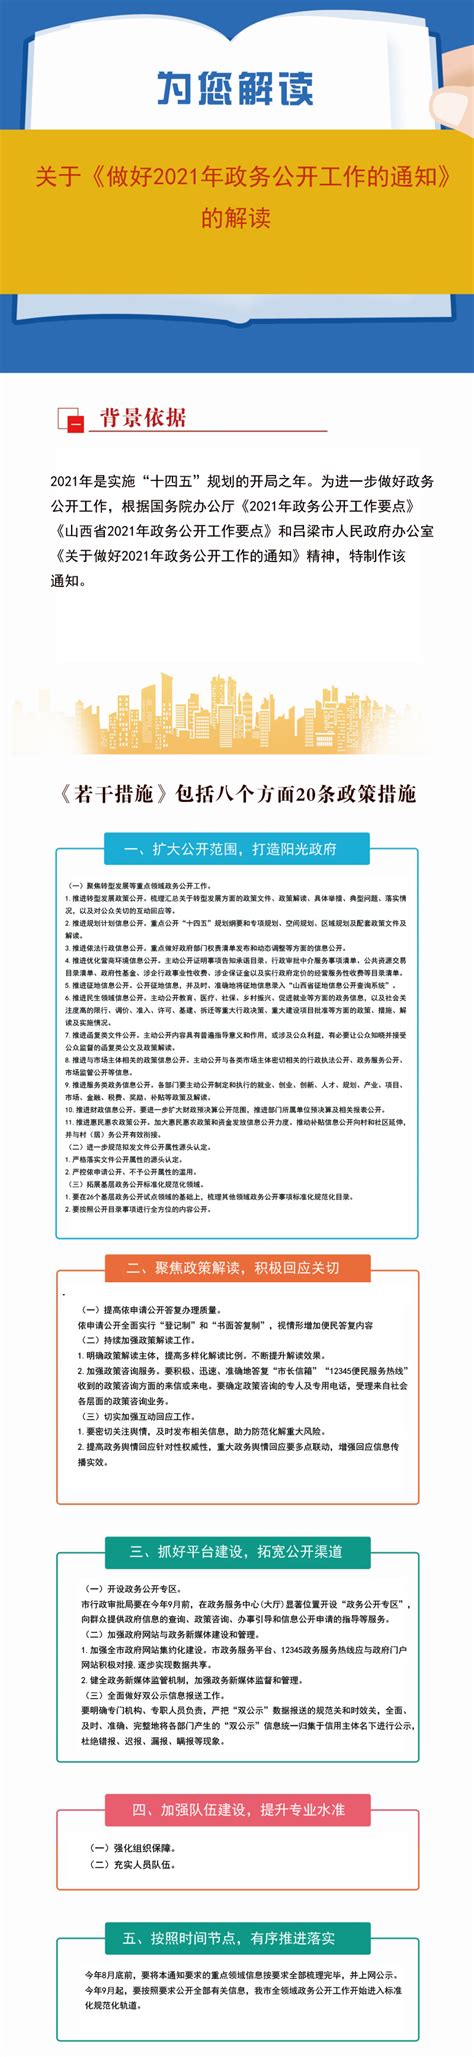 【图解】关于《做好2021年政务公开工作的通知》的解读-汾阳市人民政府门户网站